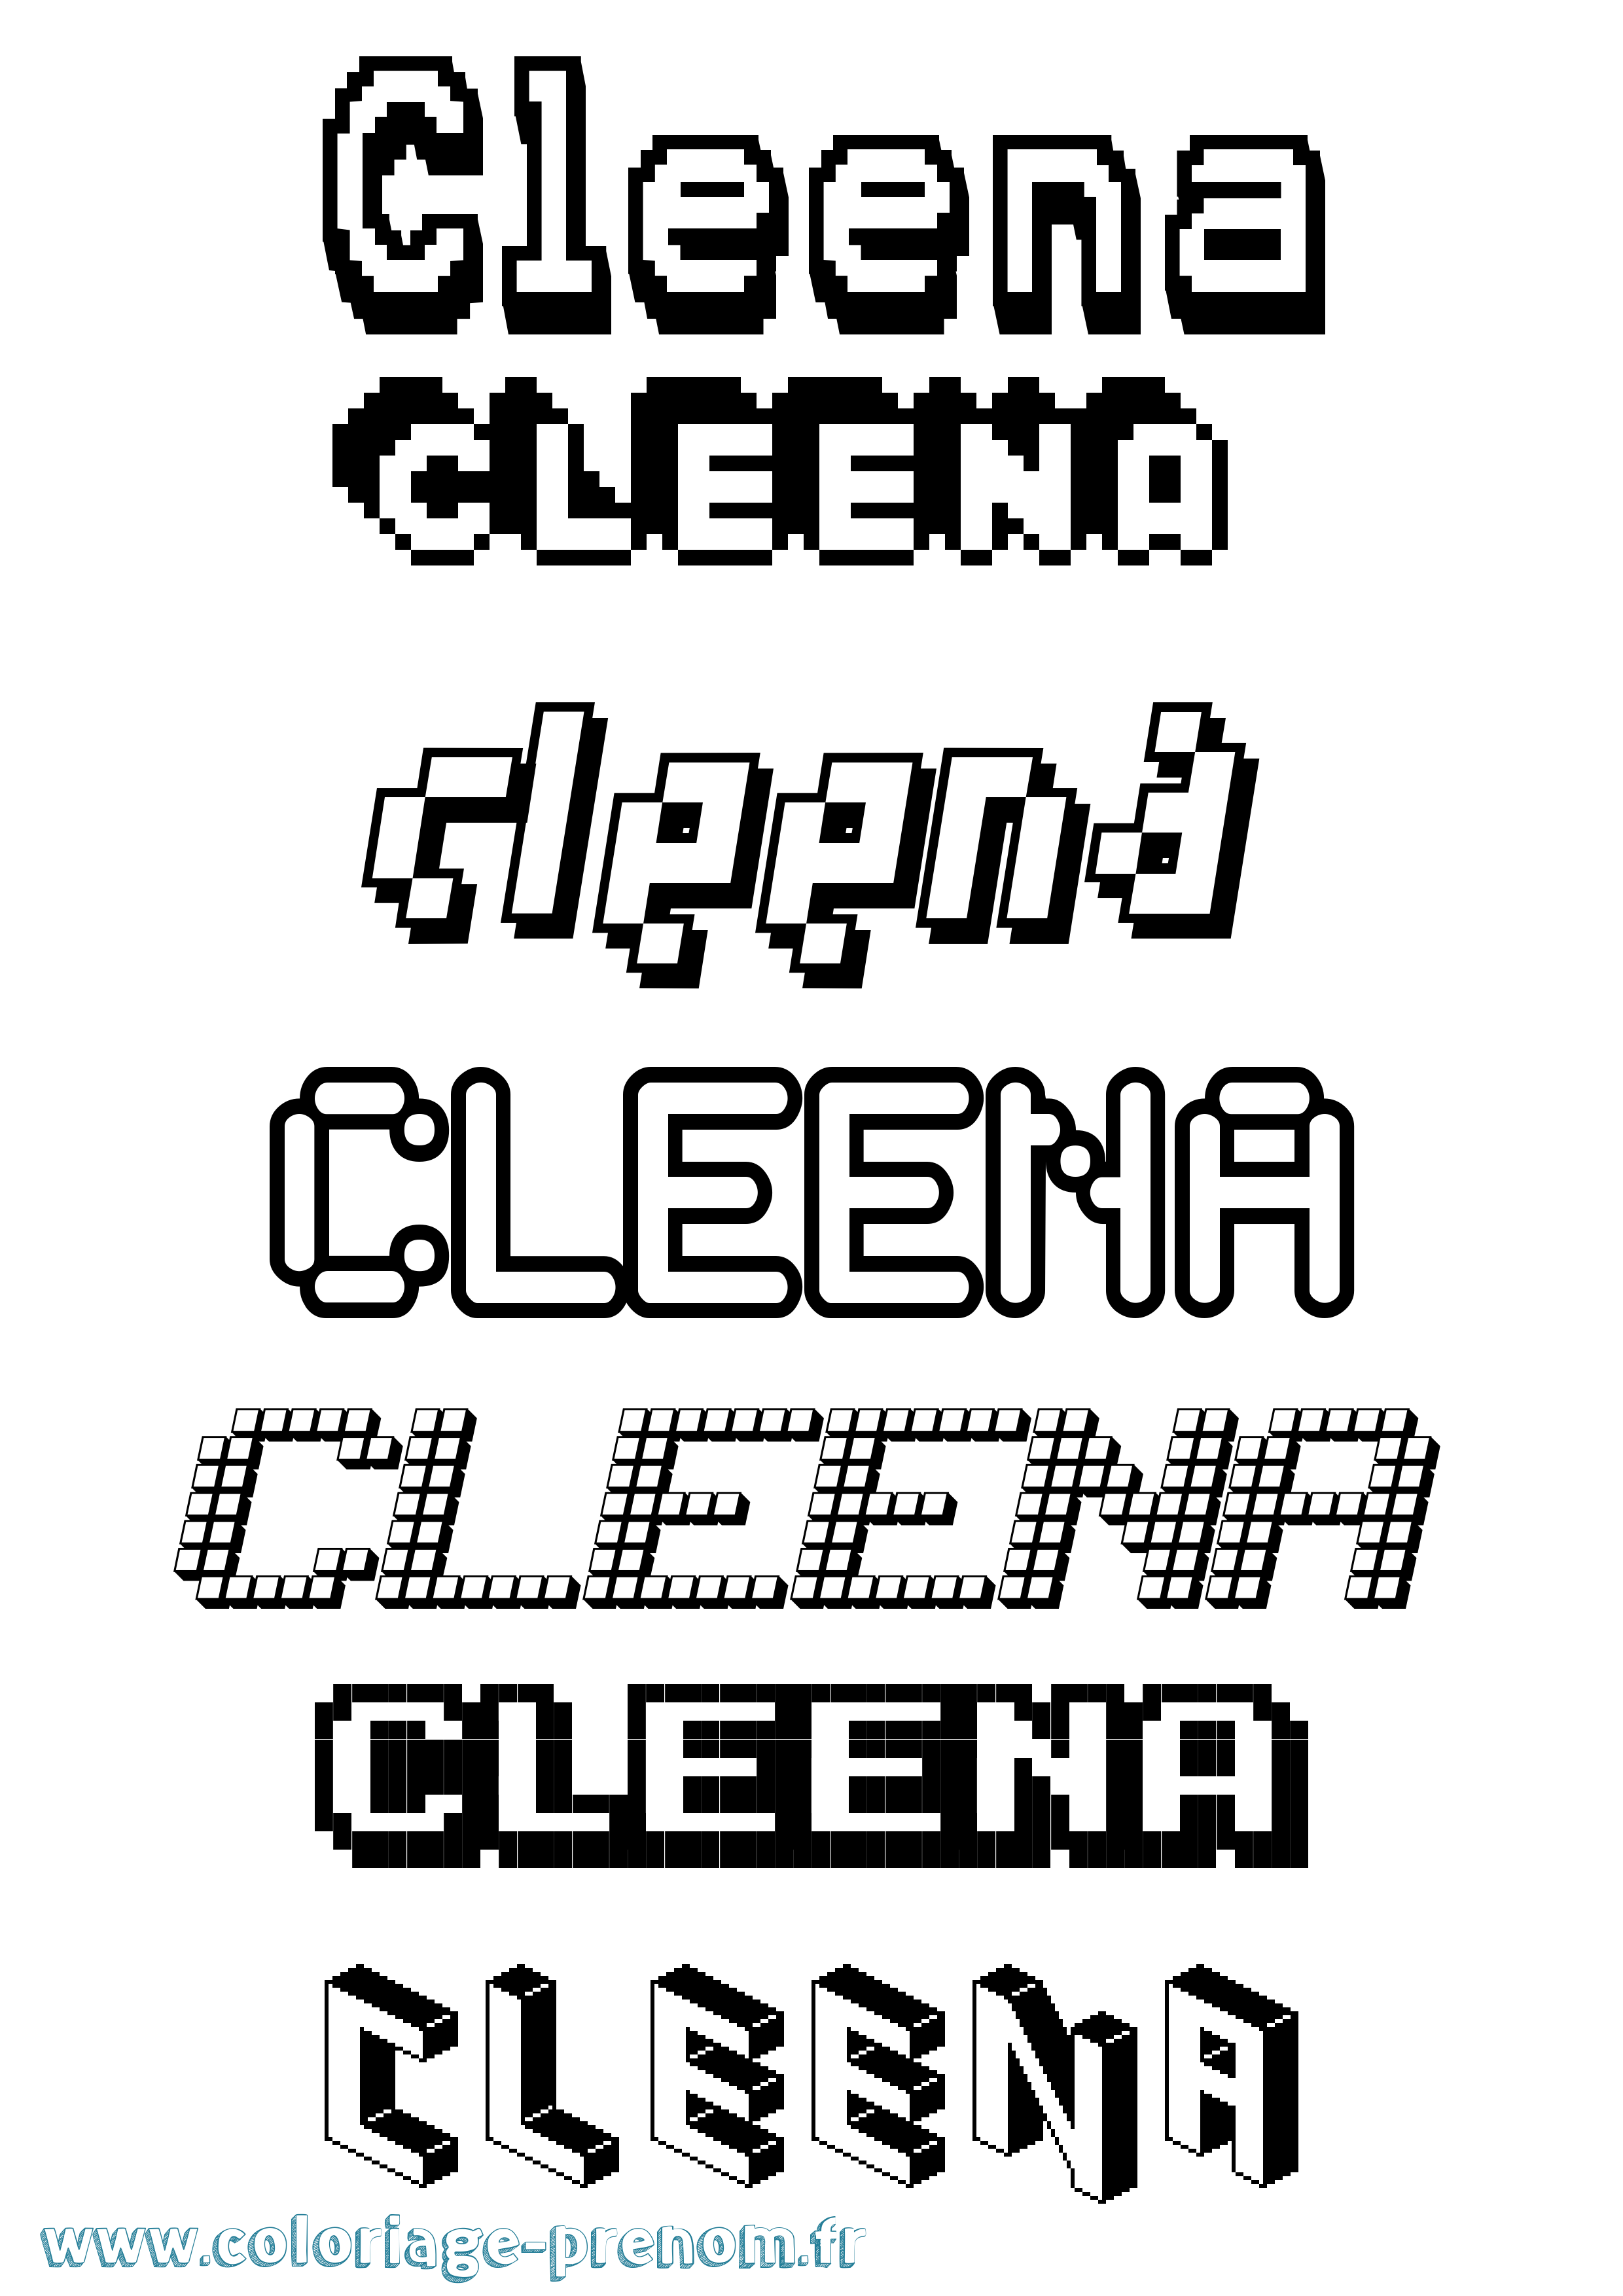 Coloriage prénom Cleena Pixel